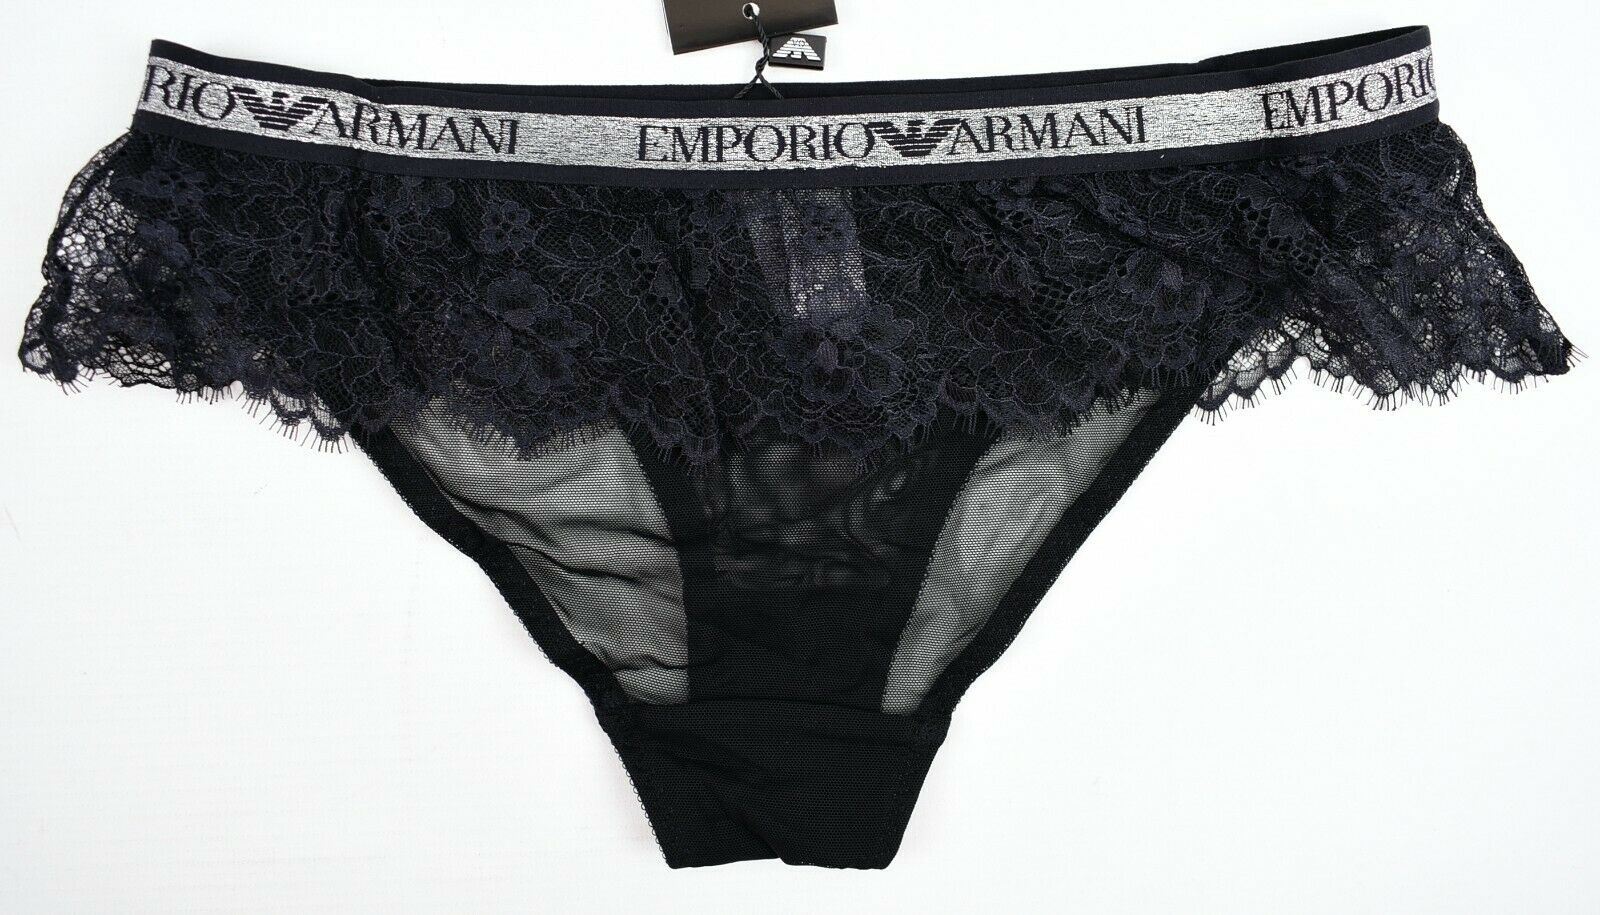 EMPORIO ARMANI Underwear: Women's Black Lace Frill Briefs Knickers, size M